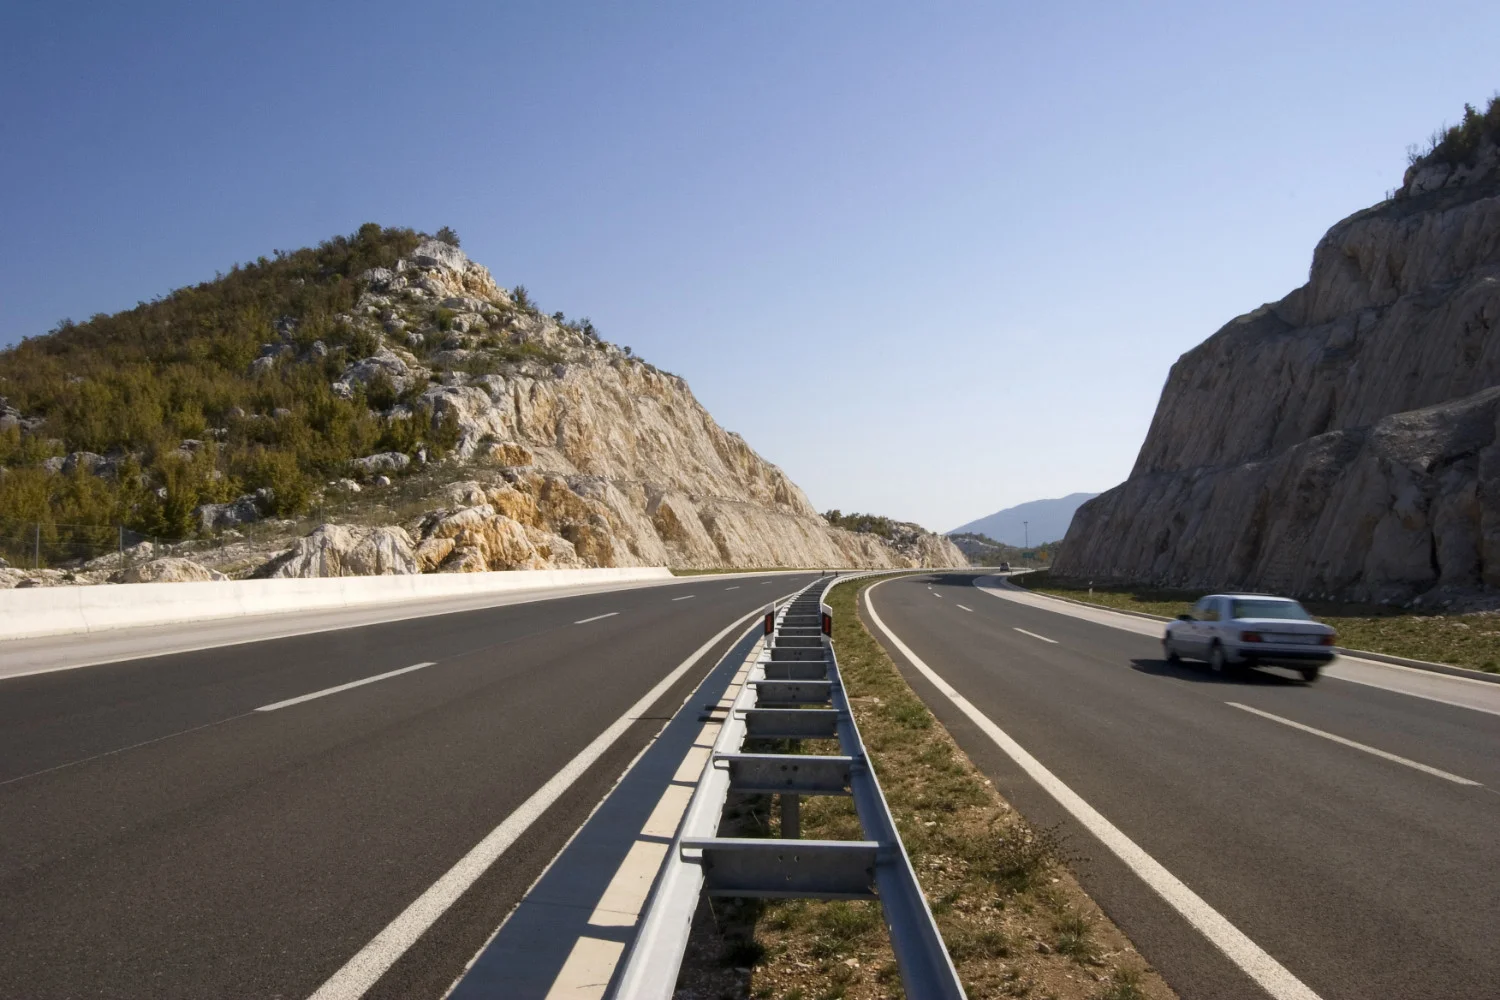 Hrvatske autoceste poznate su po visokim ograničenjima brzine. Ograničenje brzine na hrvatskim autocestama je 130 km/h.